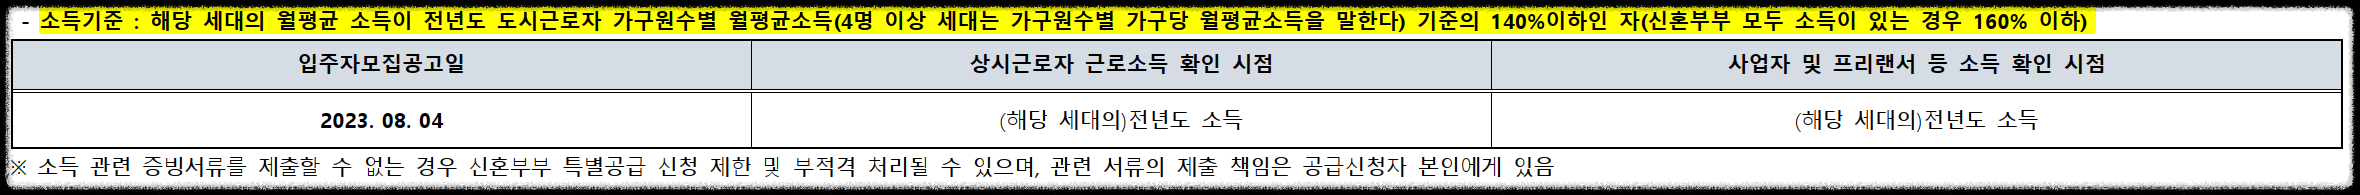 서울 동대문구 이문동 래미안 라그란데 (이문 1구역) 일반분양 청약 정보 (일정&#44; 분양가&#44; 입지분석)